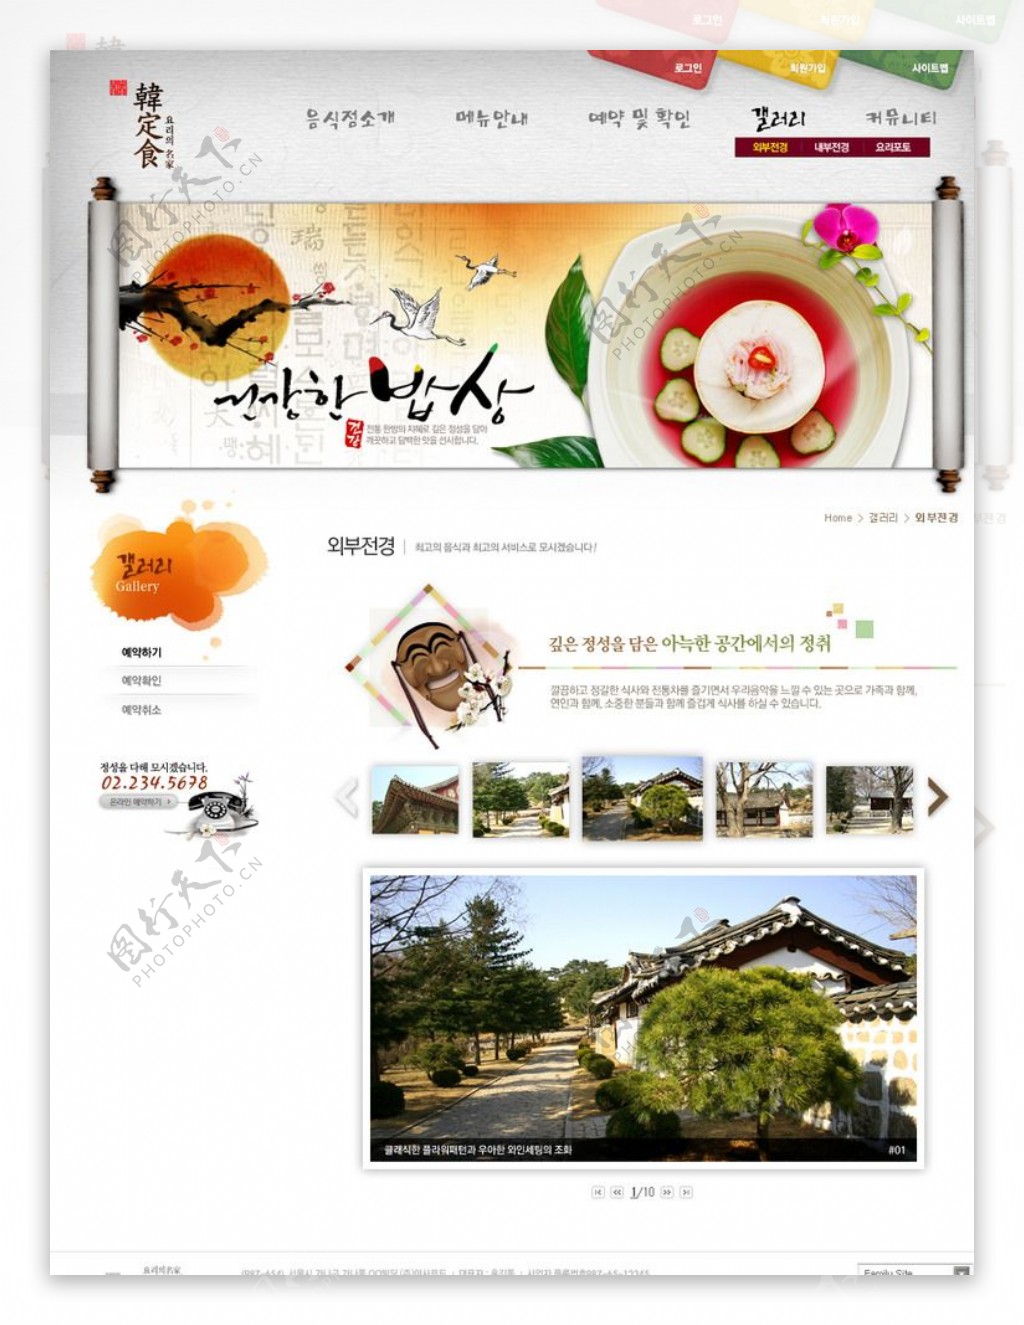 韩式风味料理美食网页图片